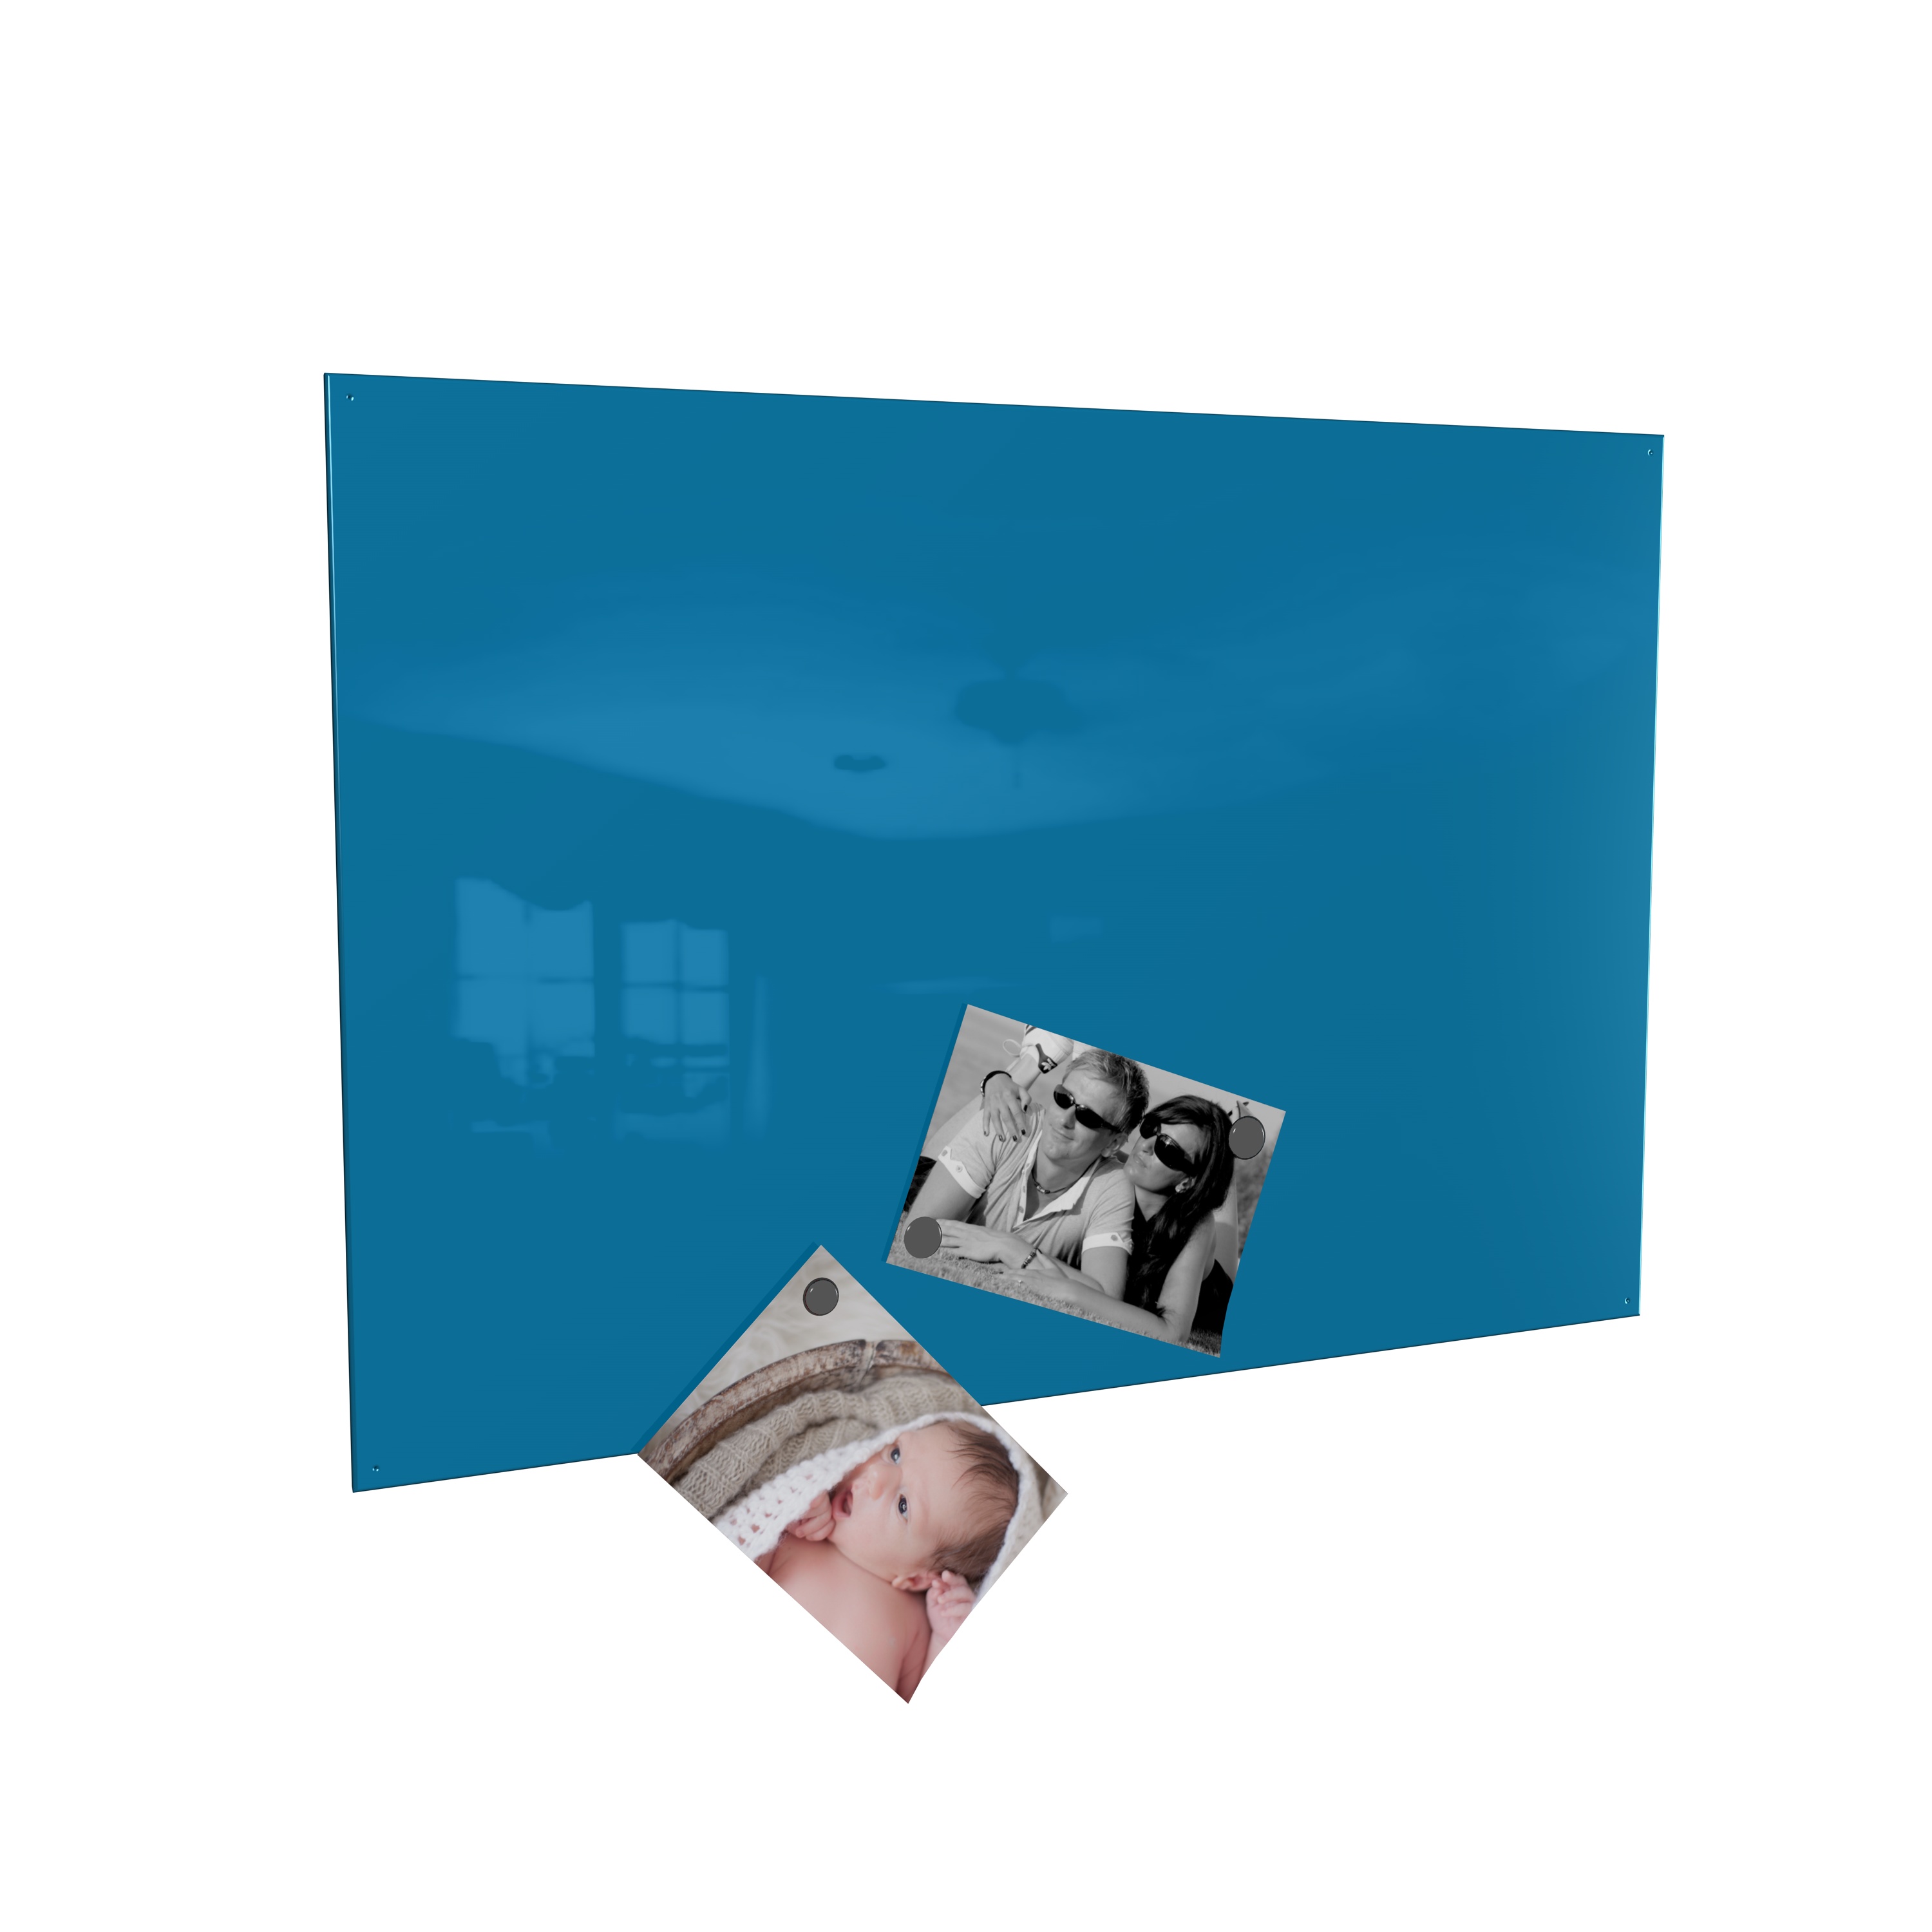 Magnetwand  Magnettafel Memoboard inkl. 4 Magnete - RAL 5015 himmelblau blau - 60 x 90 cm